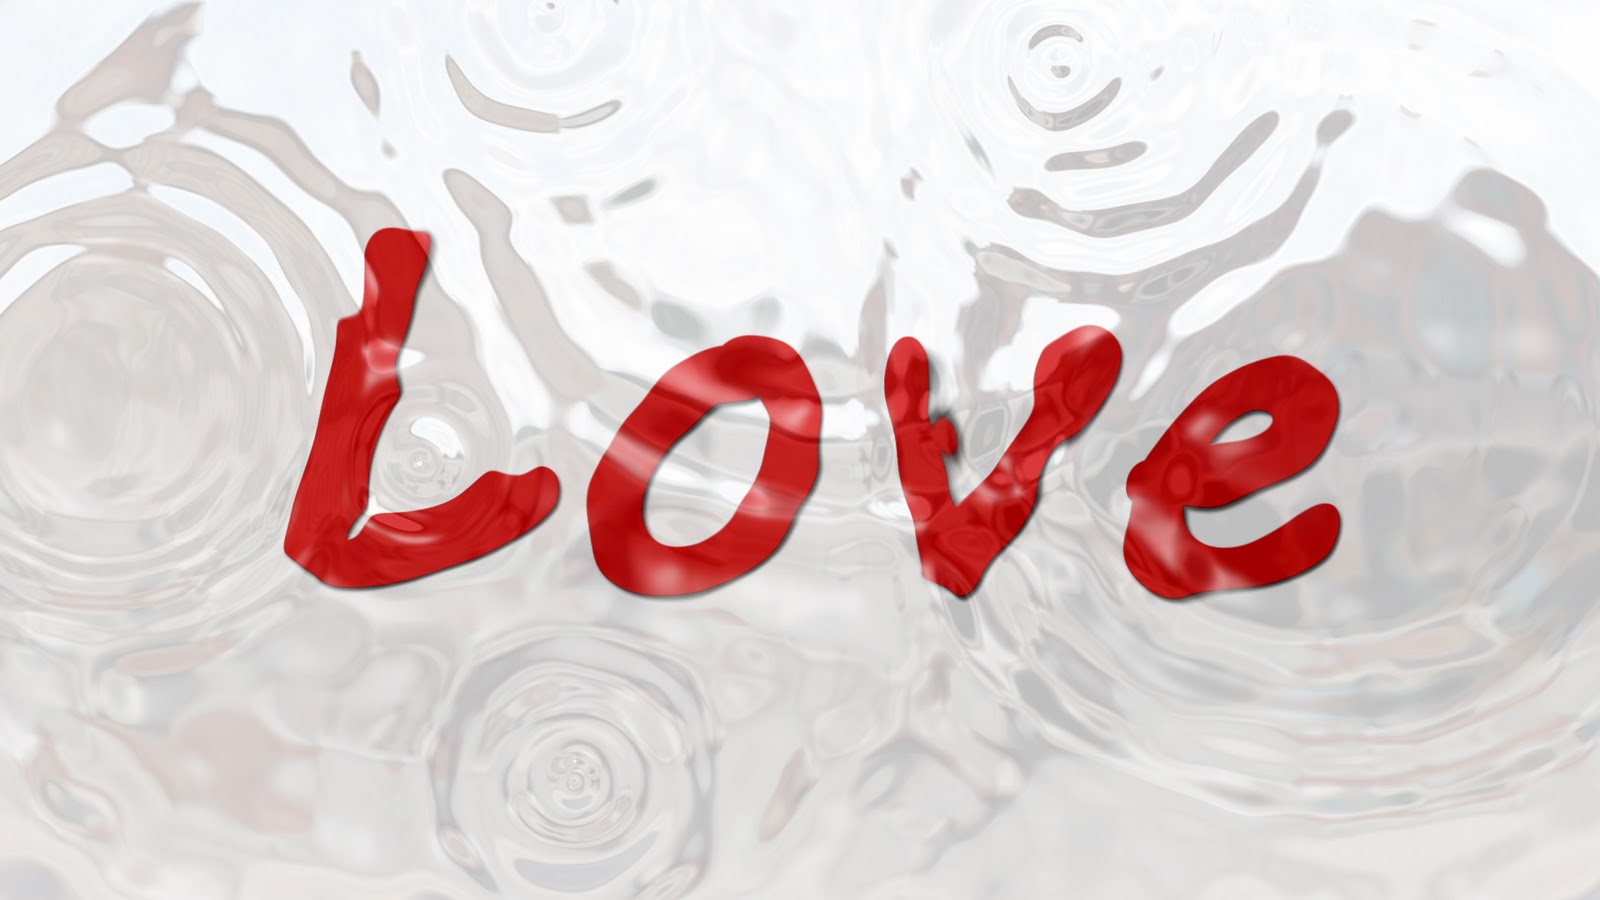 http://4.bp.blogspot.com/-RFfLnFPSlkc/TttRirN0YXI/AAAAAAAABKA/JDwaw8MChUU/s1600/desktop-love-wallpapers+hd-love-wallpaper-red-text-love.jpg